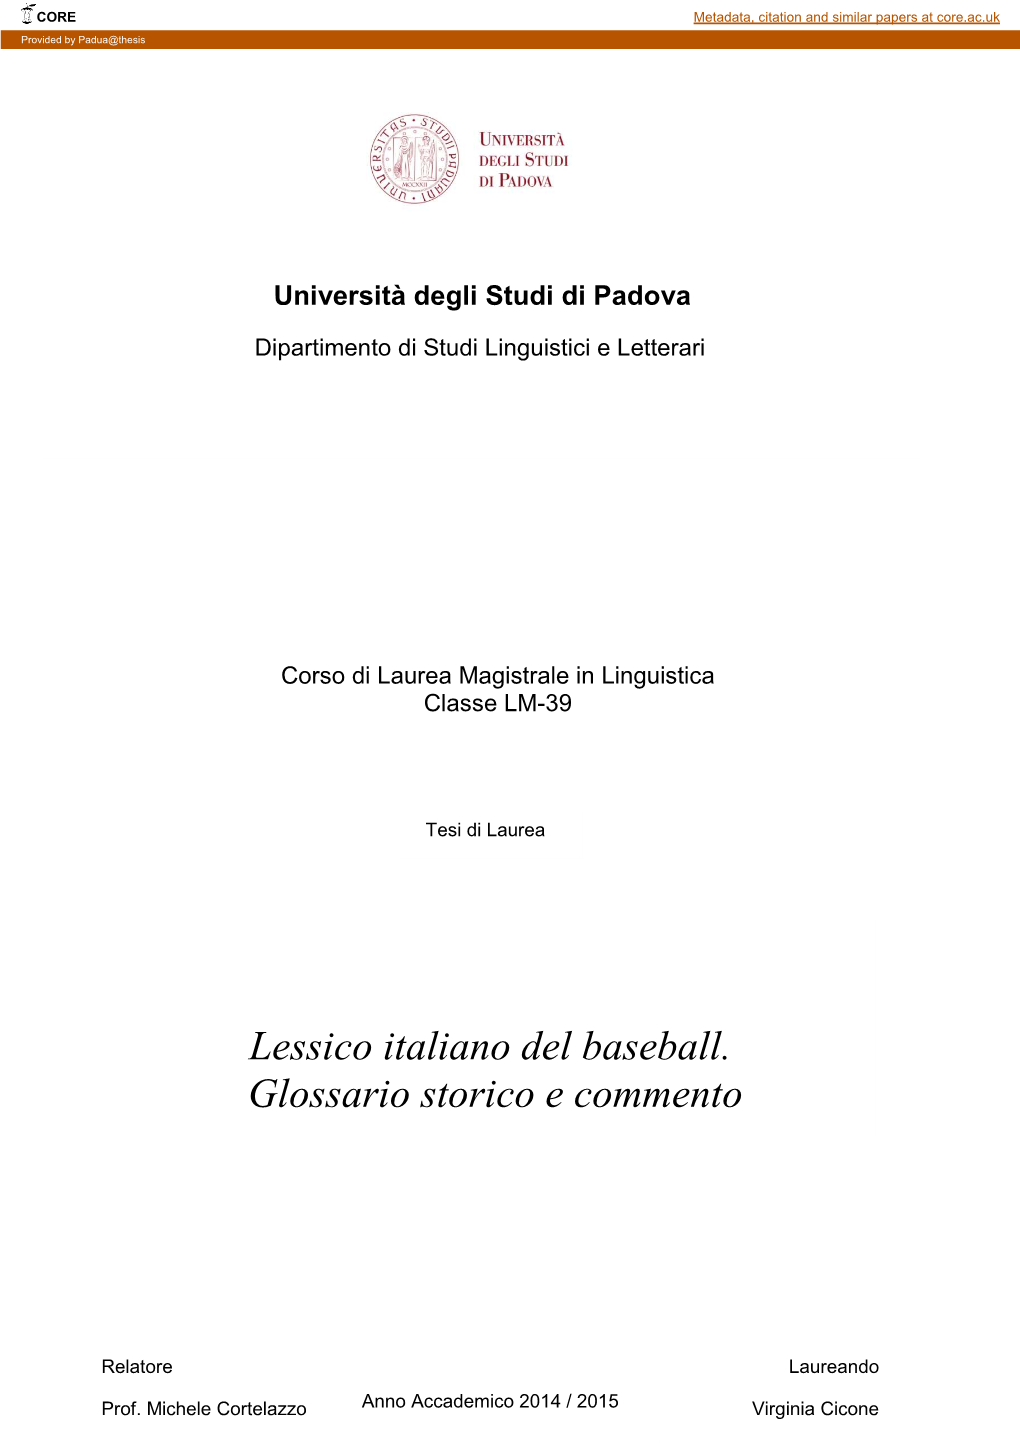 Lessico Italiano Del Baseball. Glossario Storico E Commento